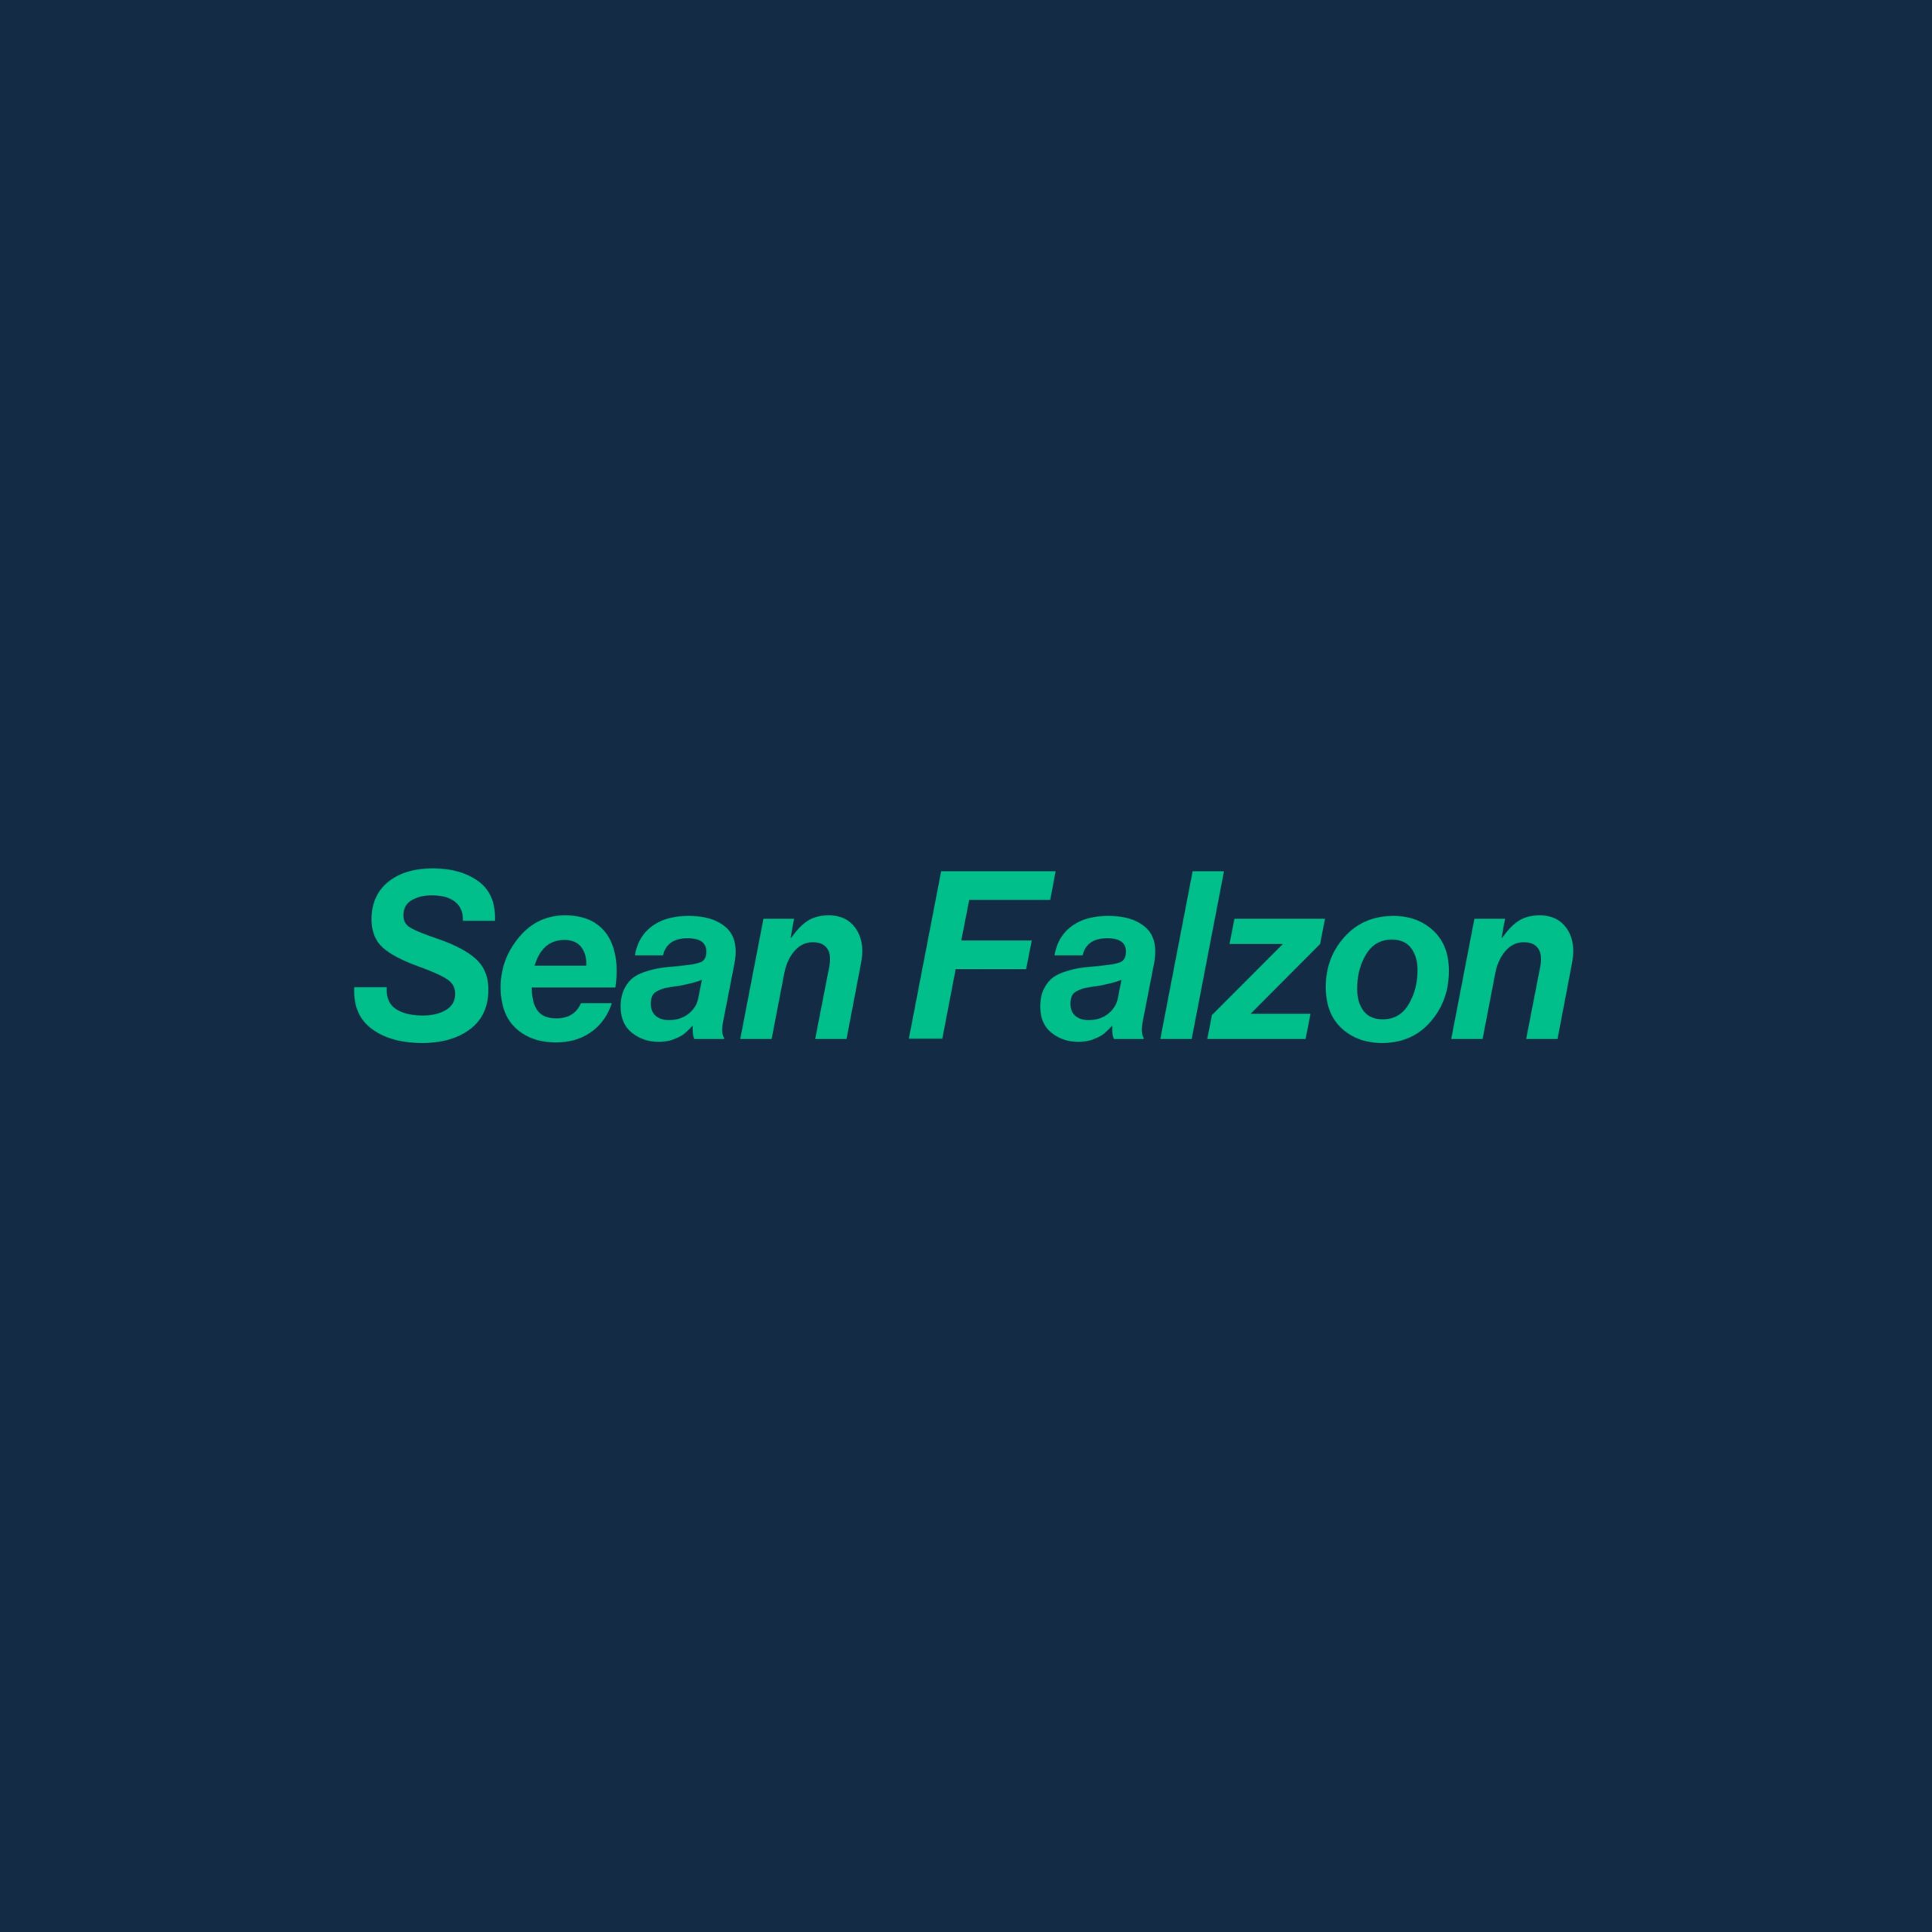 Sean Falzon